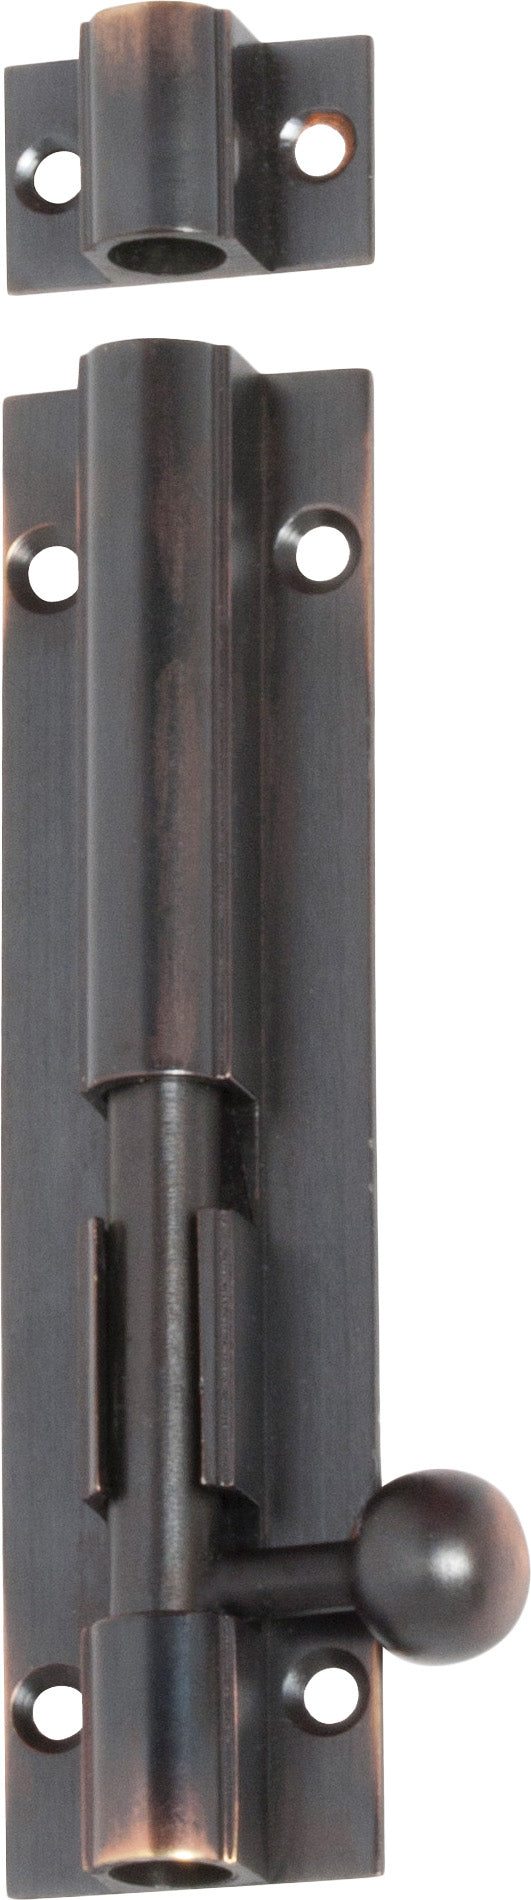 Barrel Bolt Antique Copper L100xW25mm Bolt 7.5mm